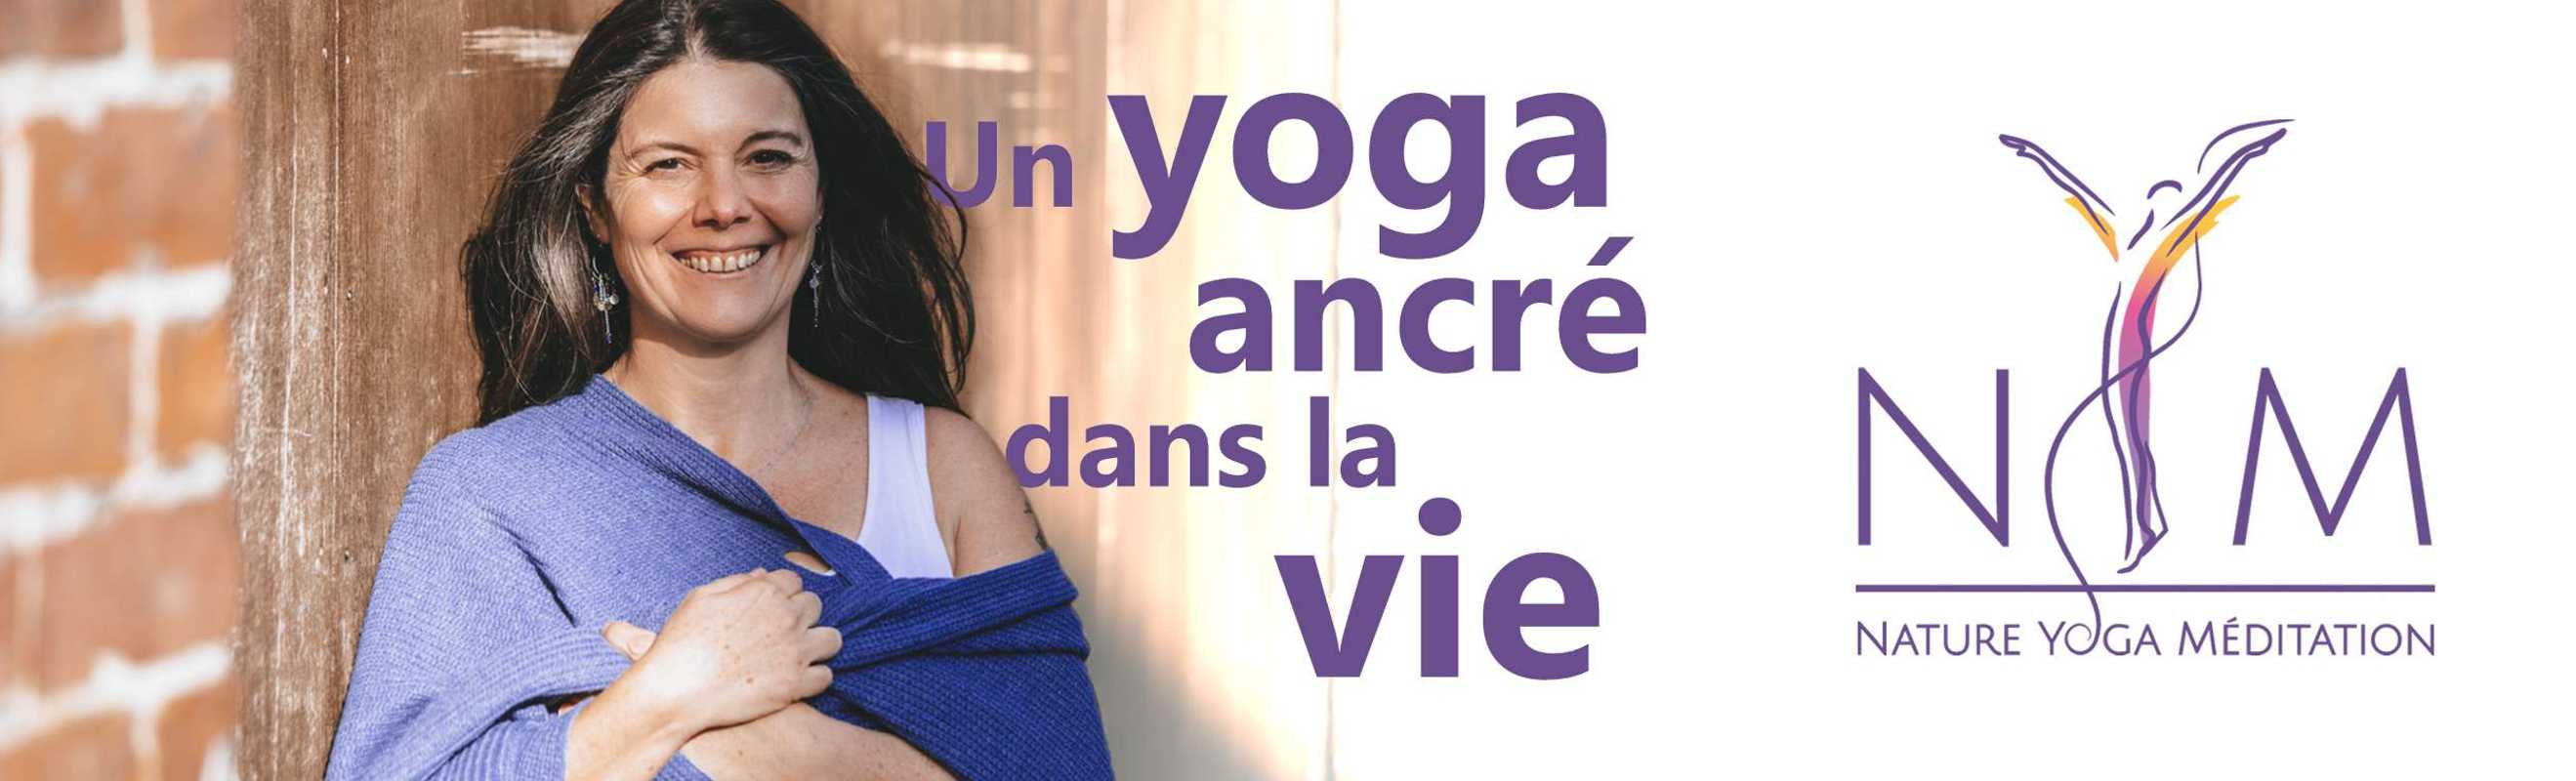 Nature Yoga Méditation (NYM) est une école de Yoga dont la professeure est Céline Reynaud. S'appuyant sur ses connaissances en Yoga et son expérience de professeur de français dans l'éducation nationale : elle accompagne des jeunes en difficulté.<br>Ses lieux d'enseignements principaux sont à Lille (59000).